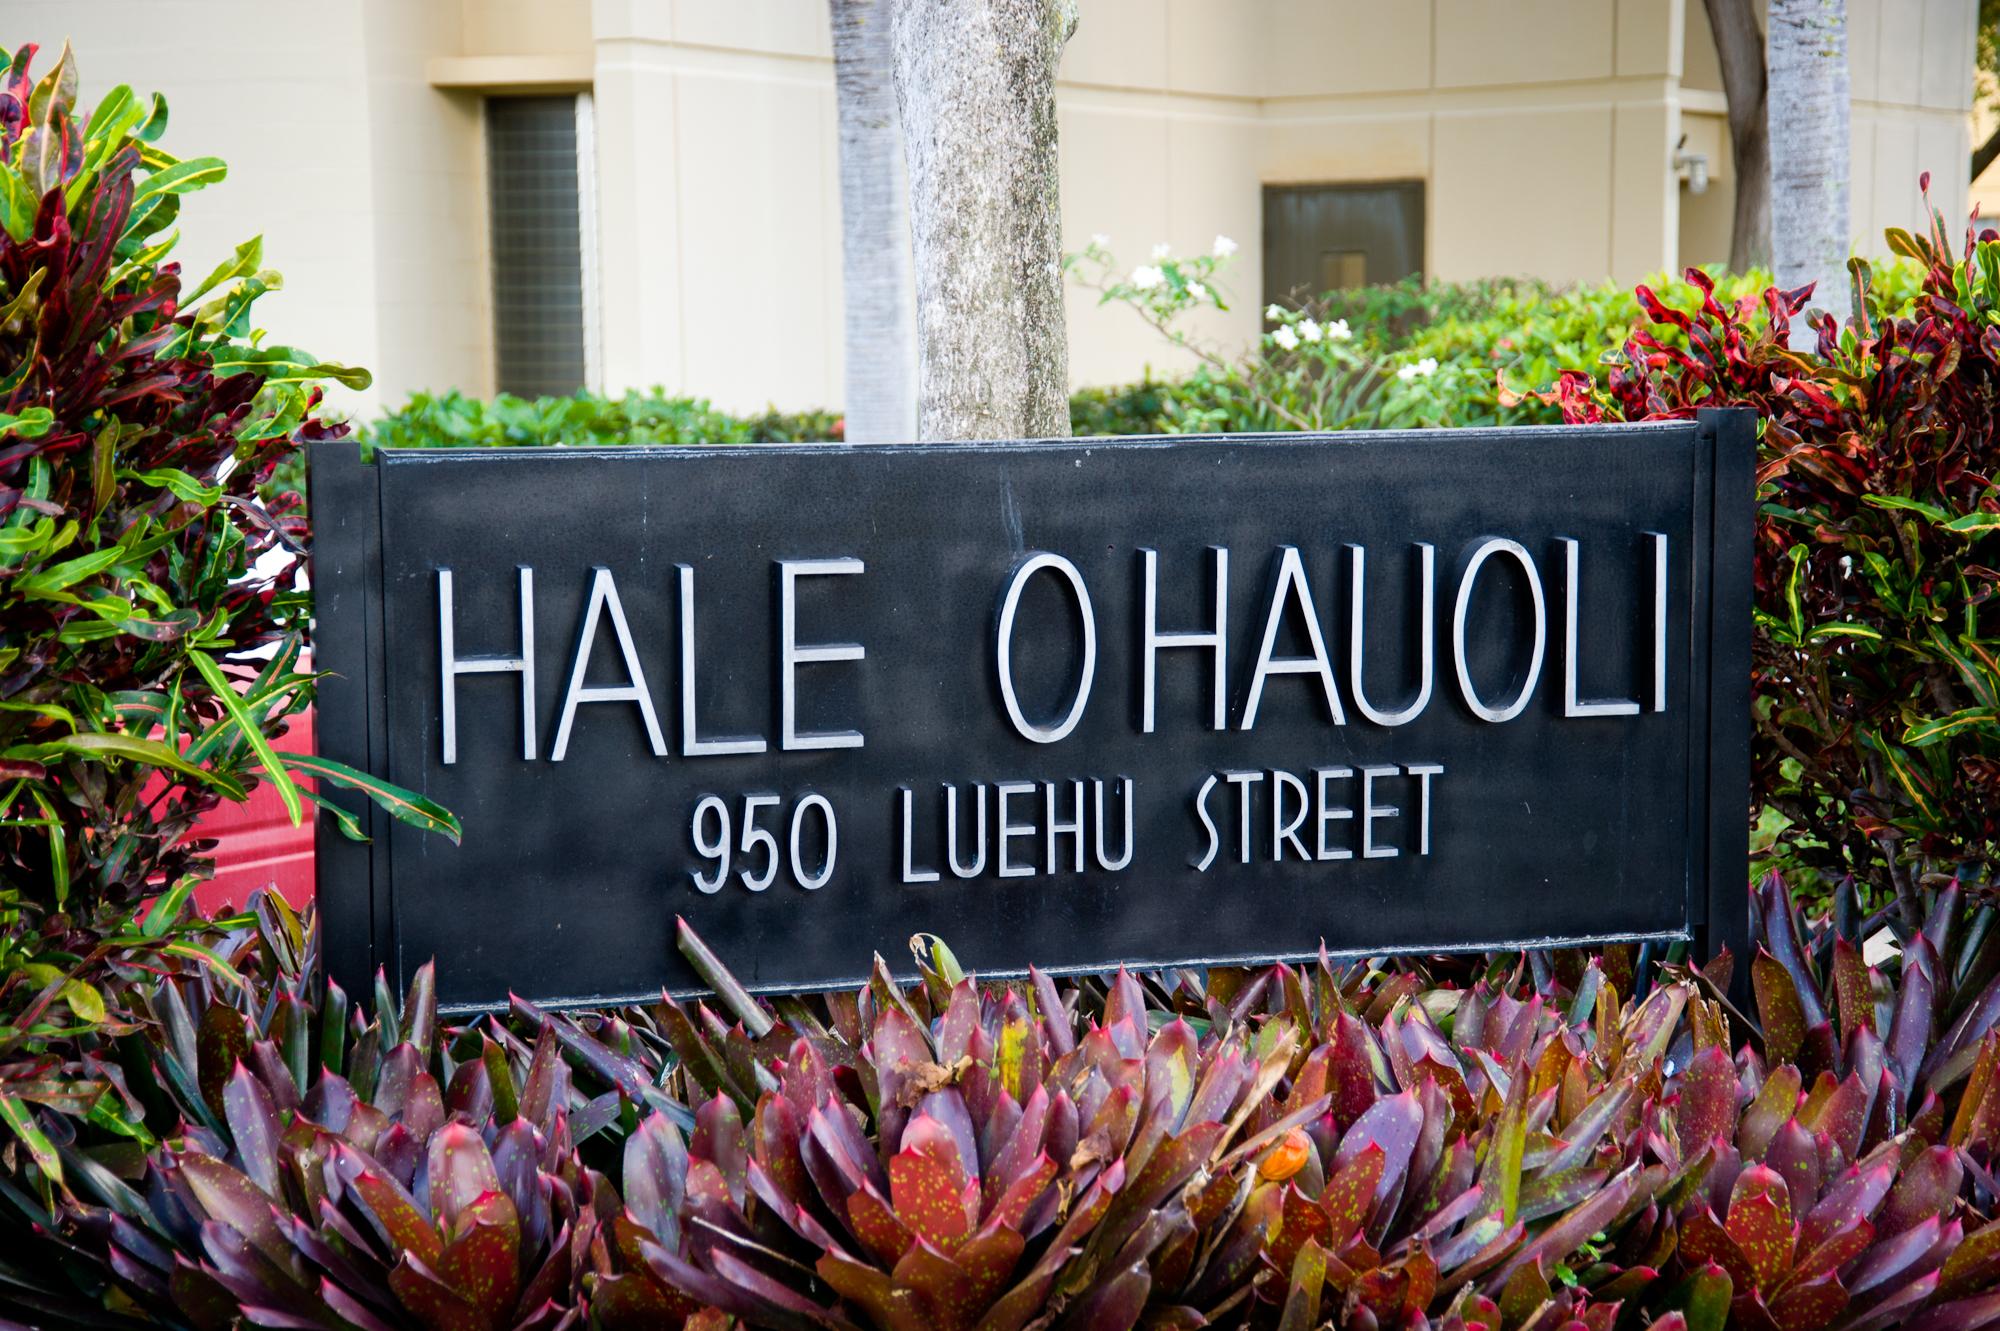 HALE O' HAUOLI  APARTMENTS